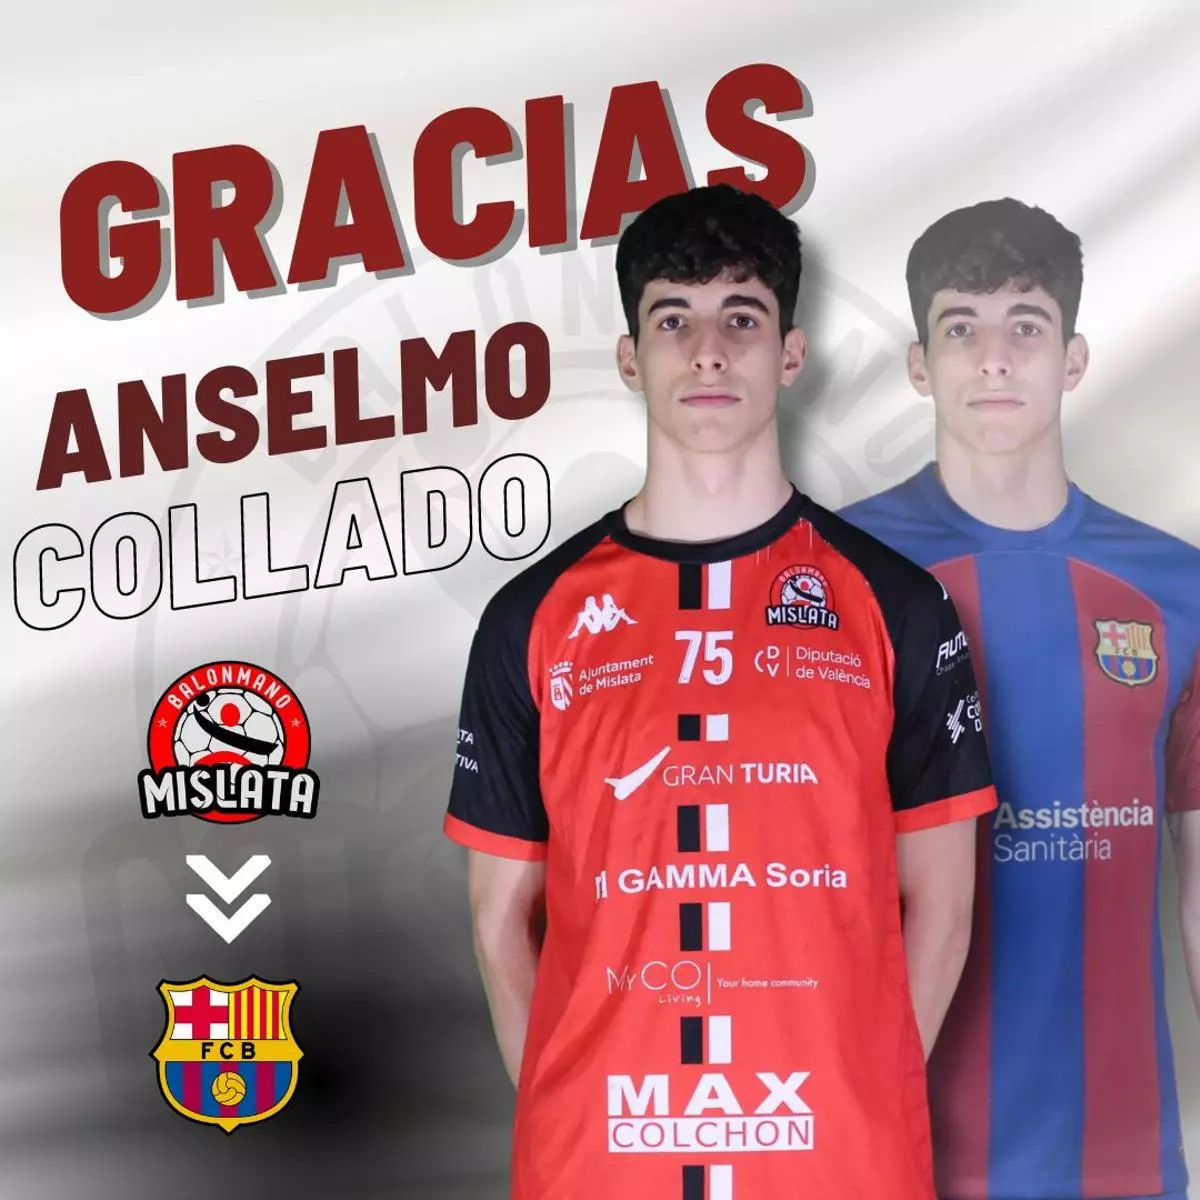 Anselmo Collado, la joya de la cantera del Mislata, jugará en el Barcelona